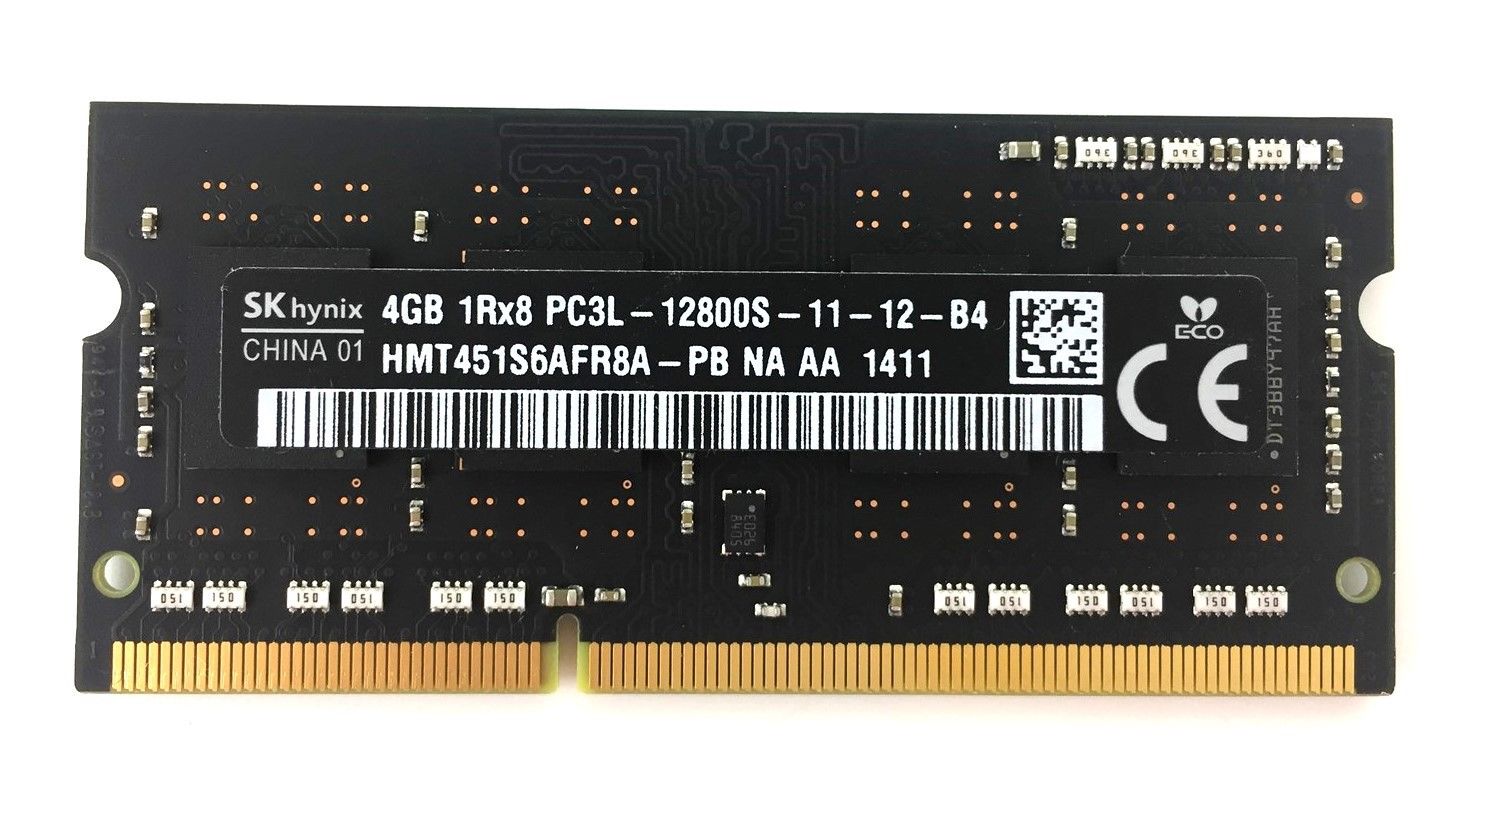 Hynix 4Gb PC3L-12800S DDR3 1600MHz 204 pin Low Power Memory HMT451S6AFR8A-PB